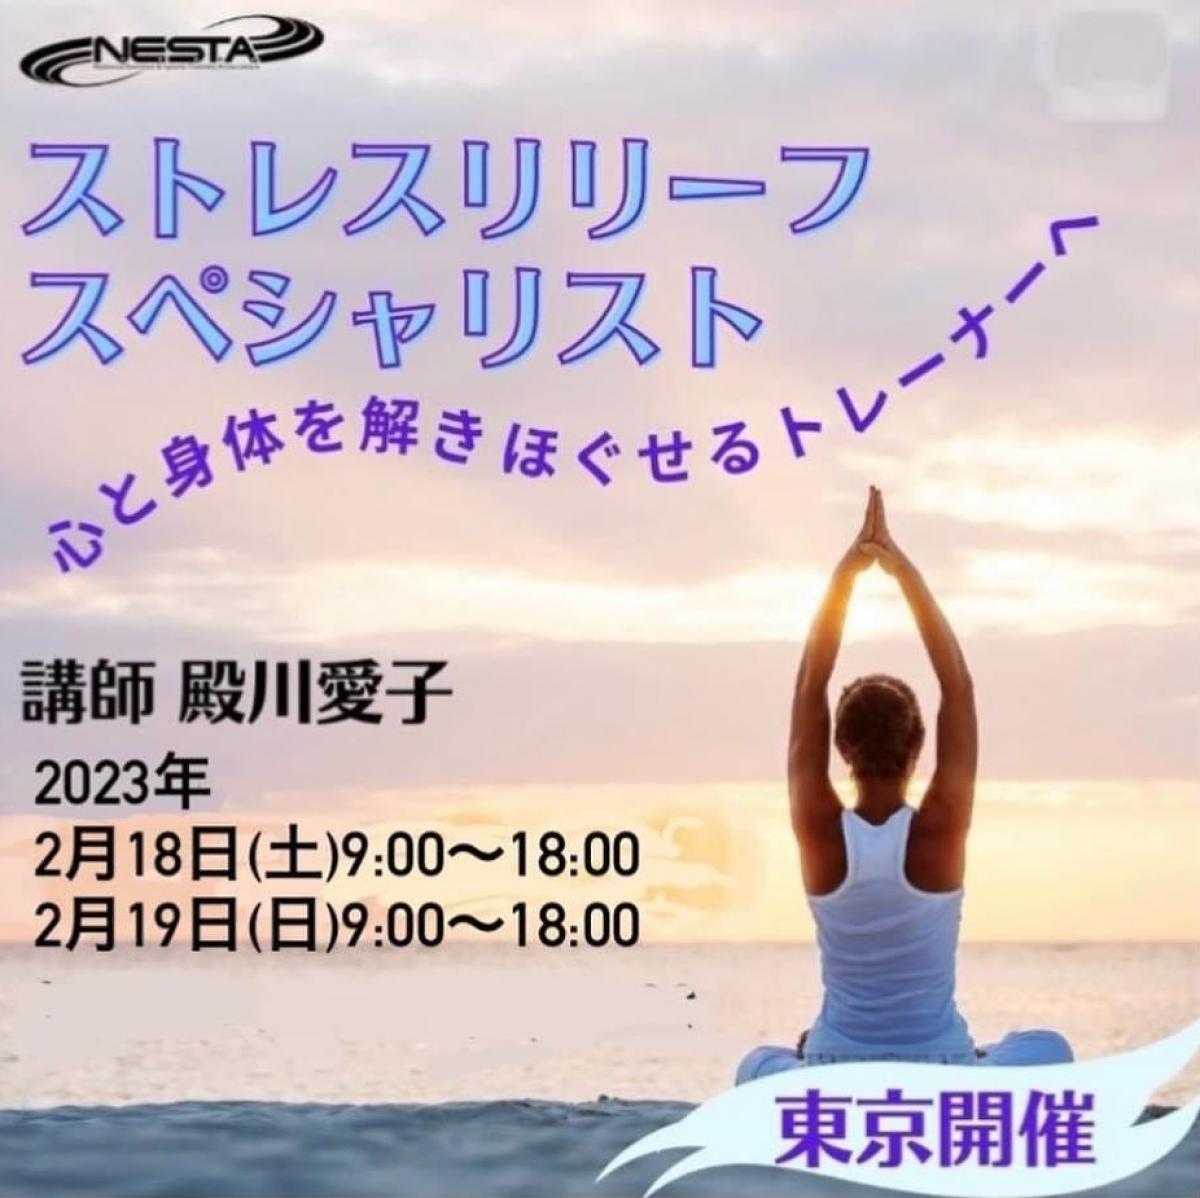 2月18日、19日に殿川愛子さんがストレスリリーフスペシャリスト講座の講師をご担当されます！【栄養コンシェルジュ取得後のご活躍】